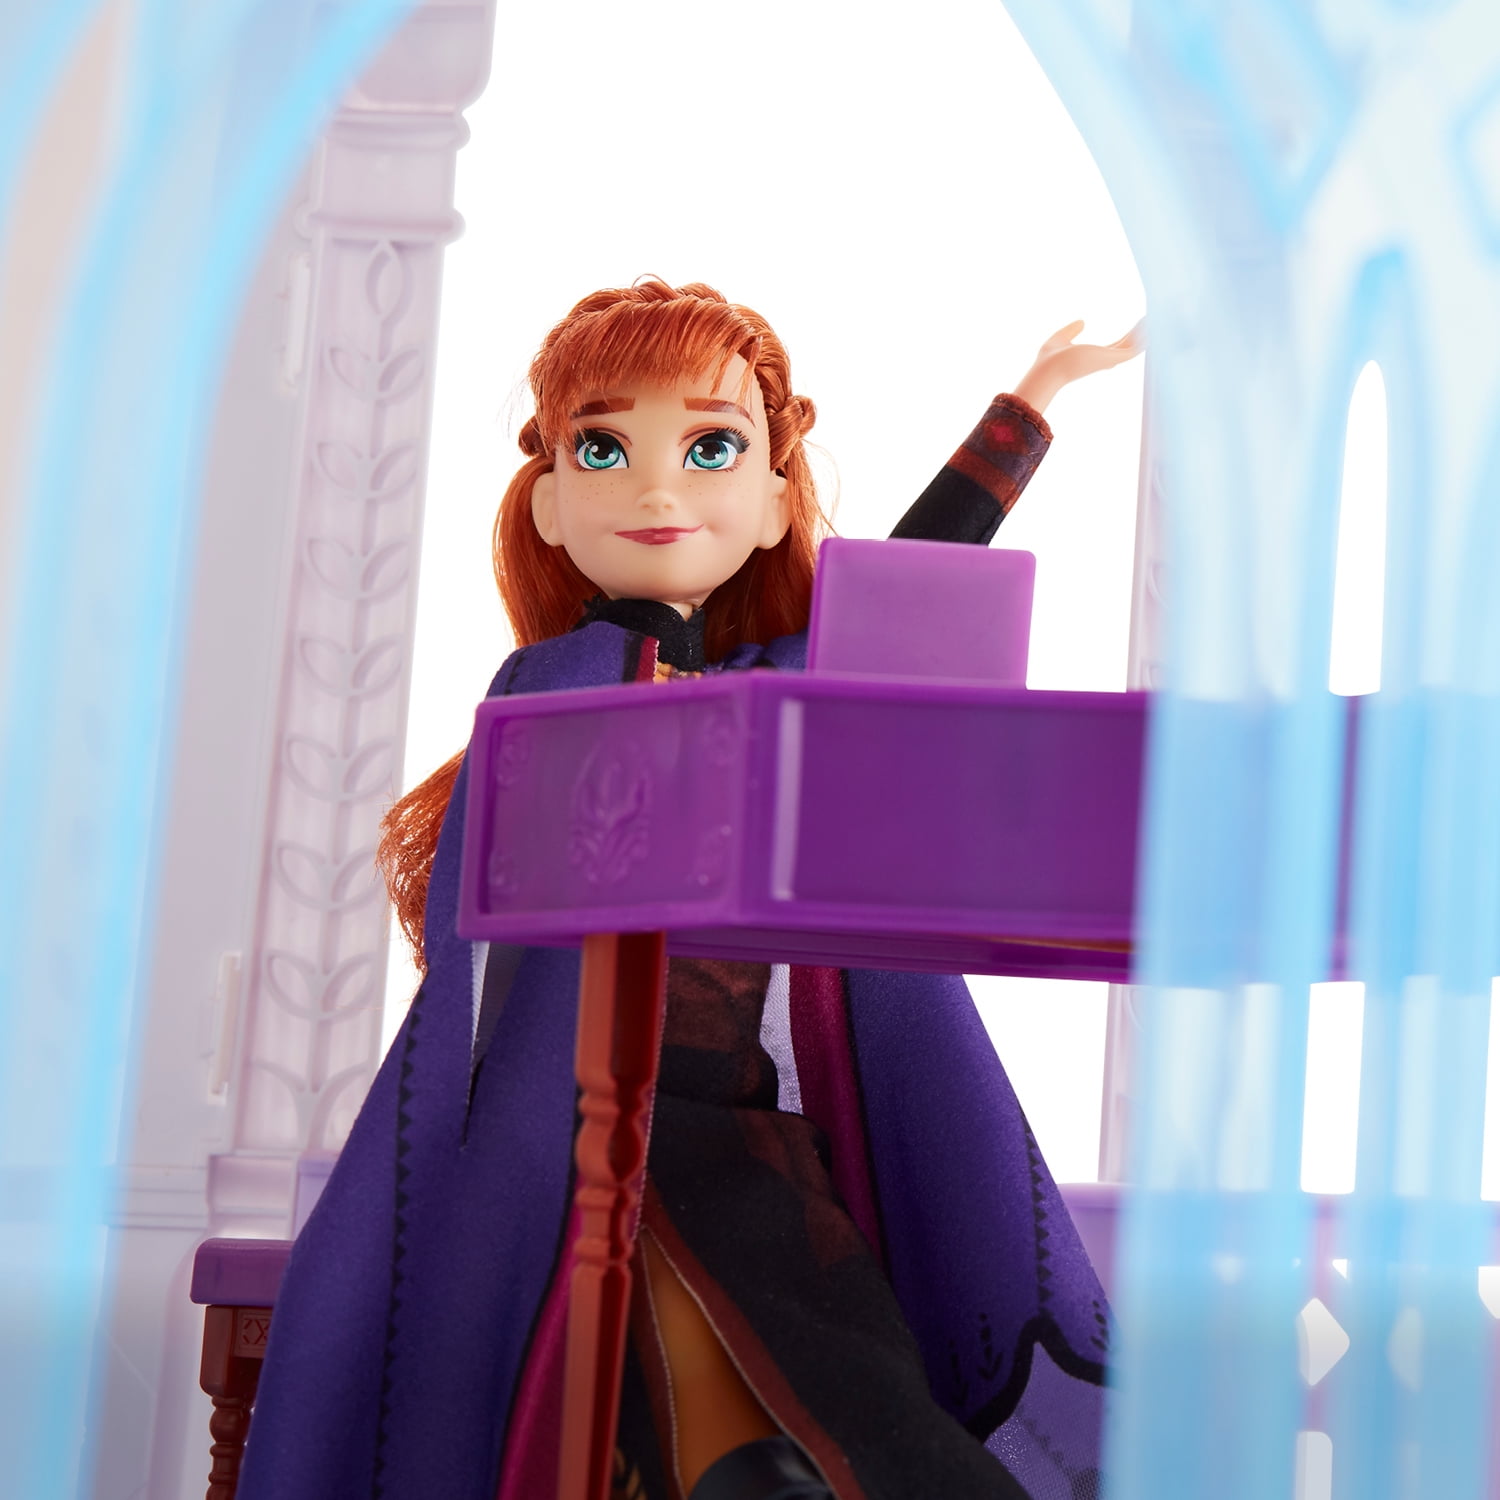 Speciaal Vermoorden essay Disney Frozen 2 Ultimate Arendelle Castle Playset, Lights, Moving Balcony,  5x4 Ft. - Walmart.com